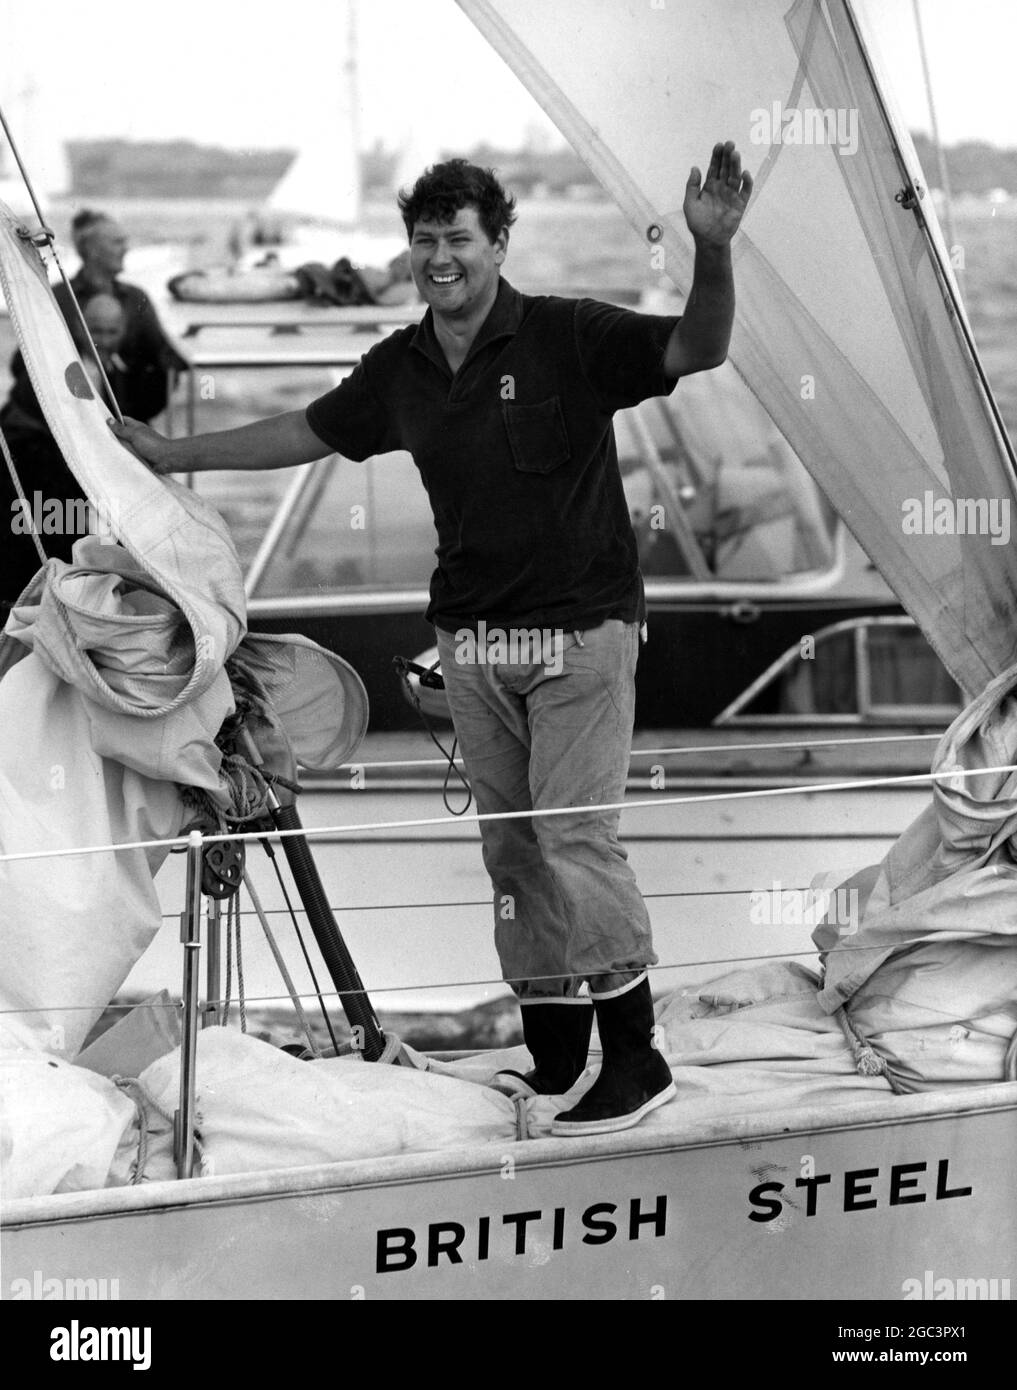 Chay Blyth , le yachtsman du monde entier , est passé à terre pour terminer son voyage de 30,000 miles pour la première fois en 293 jours . Il est arrivé au quai du village de Hamble dans le hampshire à un accueil tumultueuse de centaines de personnes et de toutes sortes de navires de mer. Le prince Philip, le prince Charles et la princesse Anne étaient également là pour le saluer. 6 août 1971 Banque D'Images